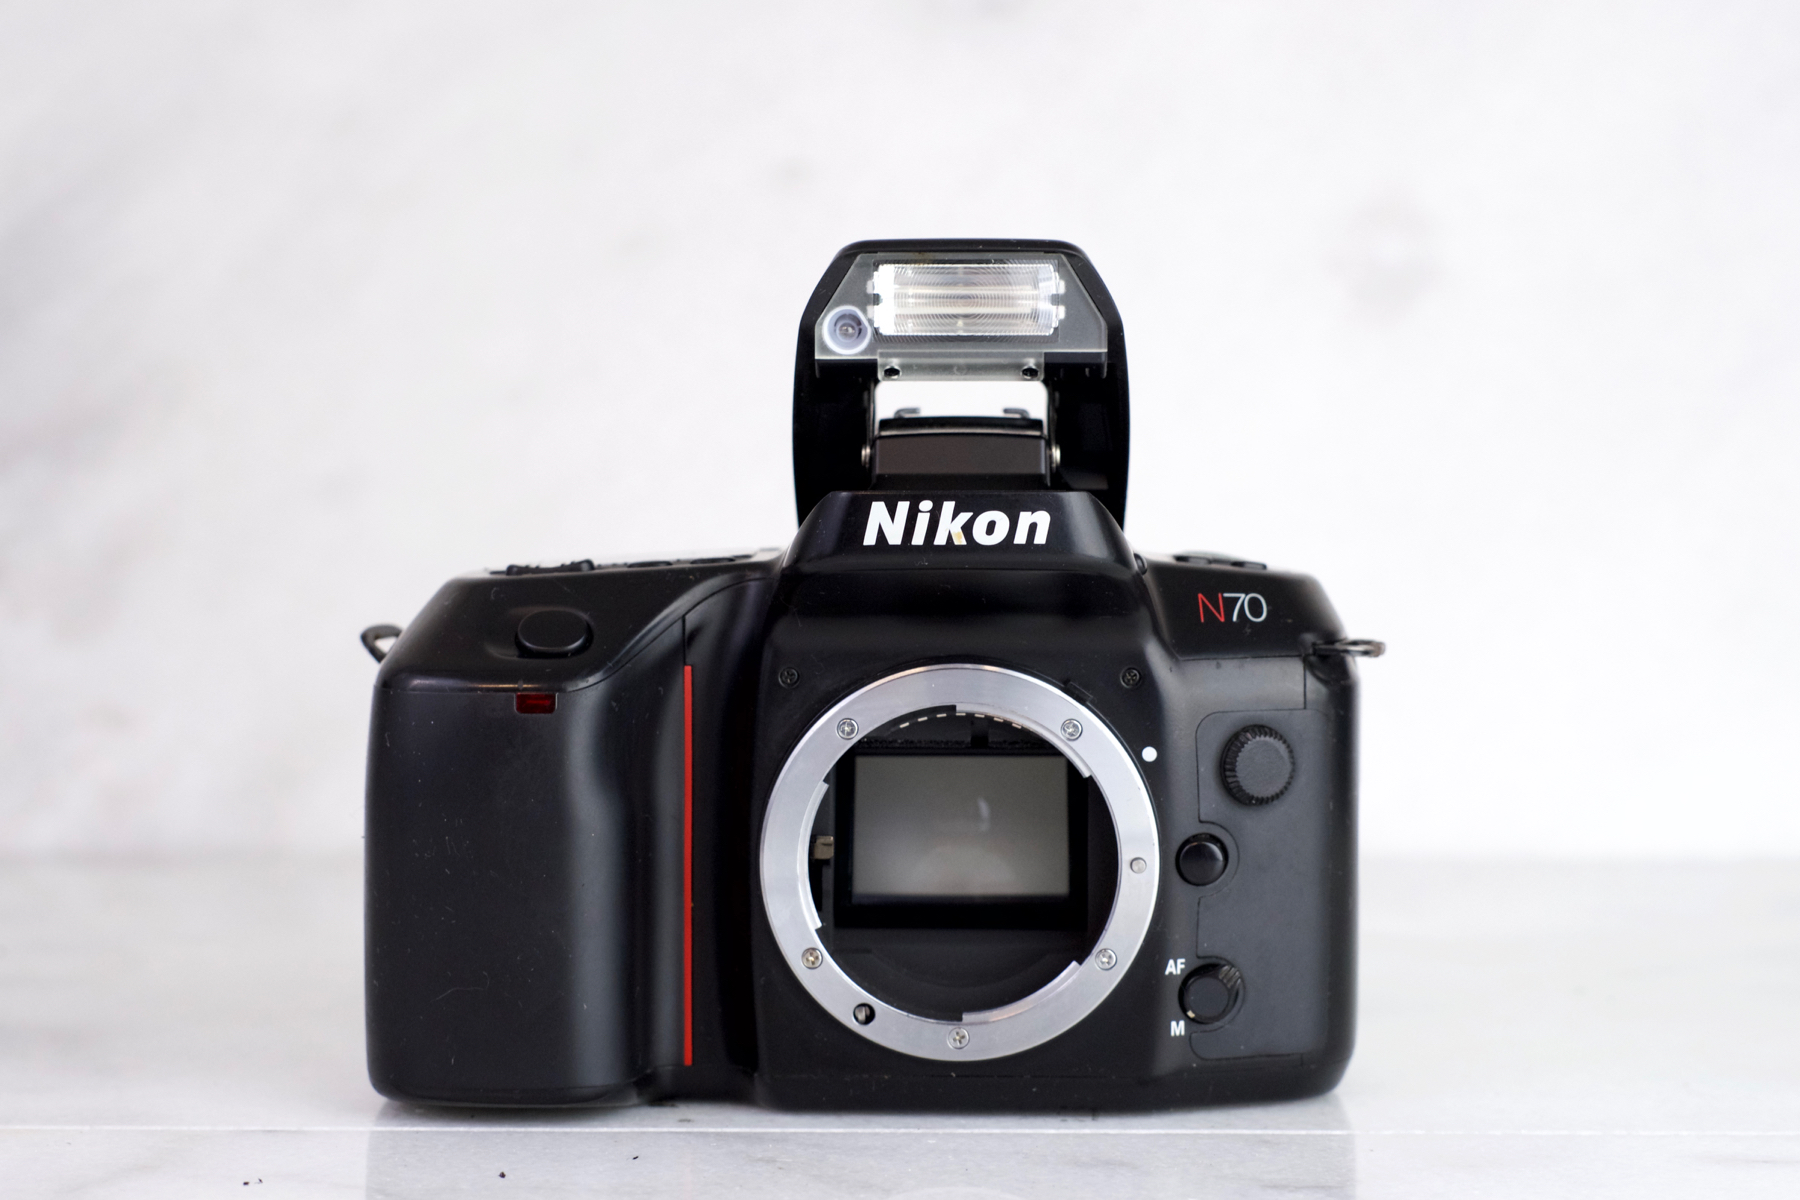 Conjugeren Opschudding Kennis maken Nikon N70 for Parts or Repair — F Stop Cameras